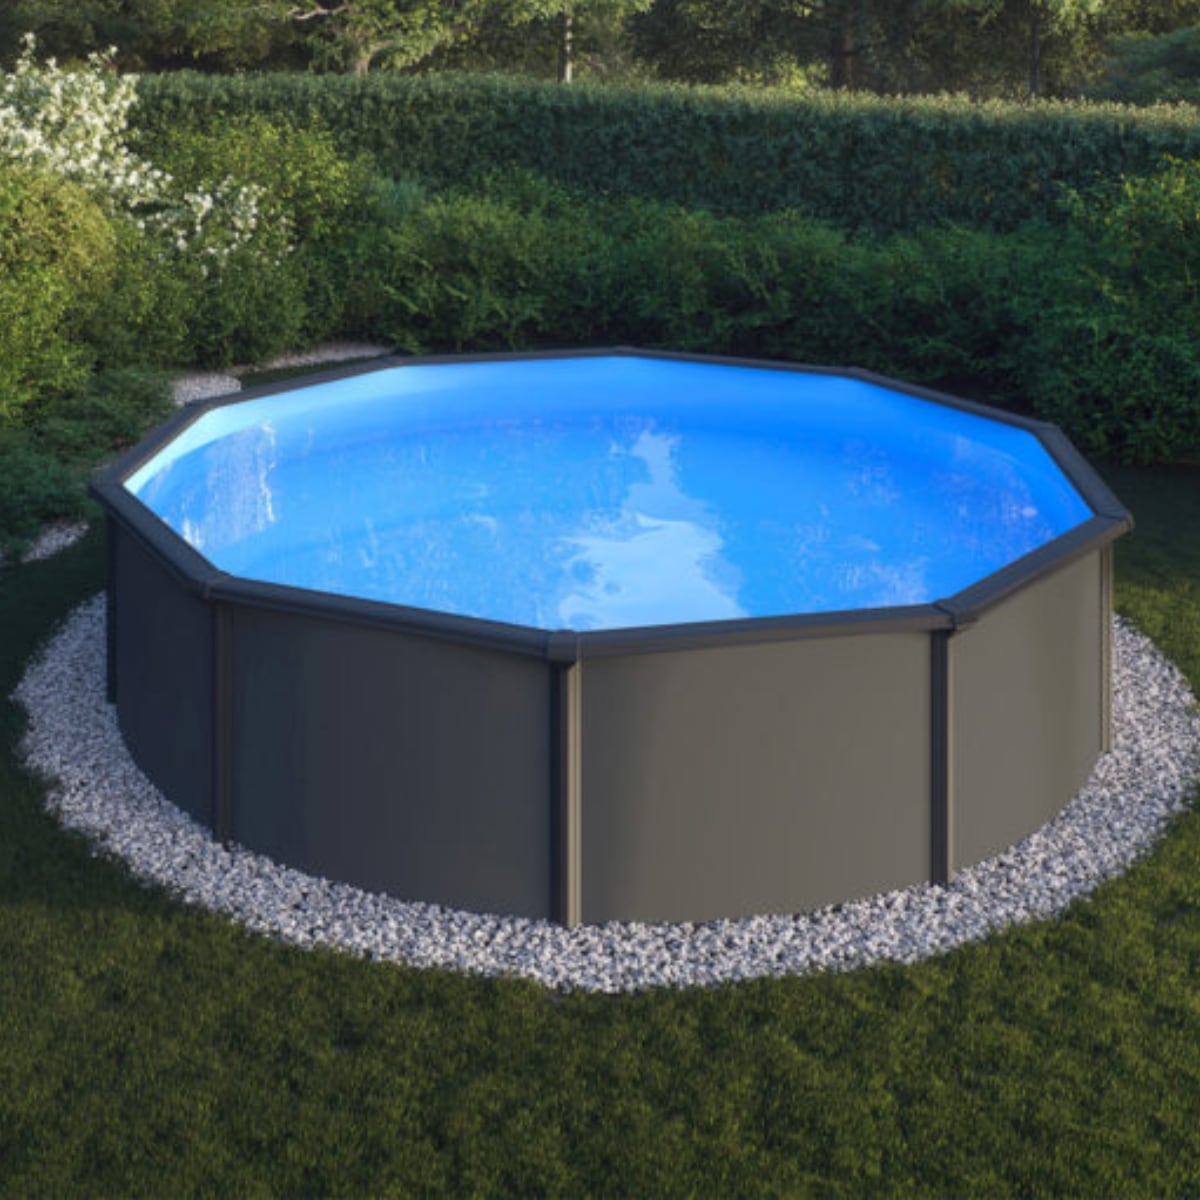 Brug SummerFun Classic Pool 3,5 x 1,2 m til en forbedret oplevelse